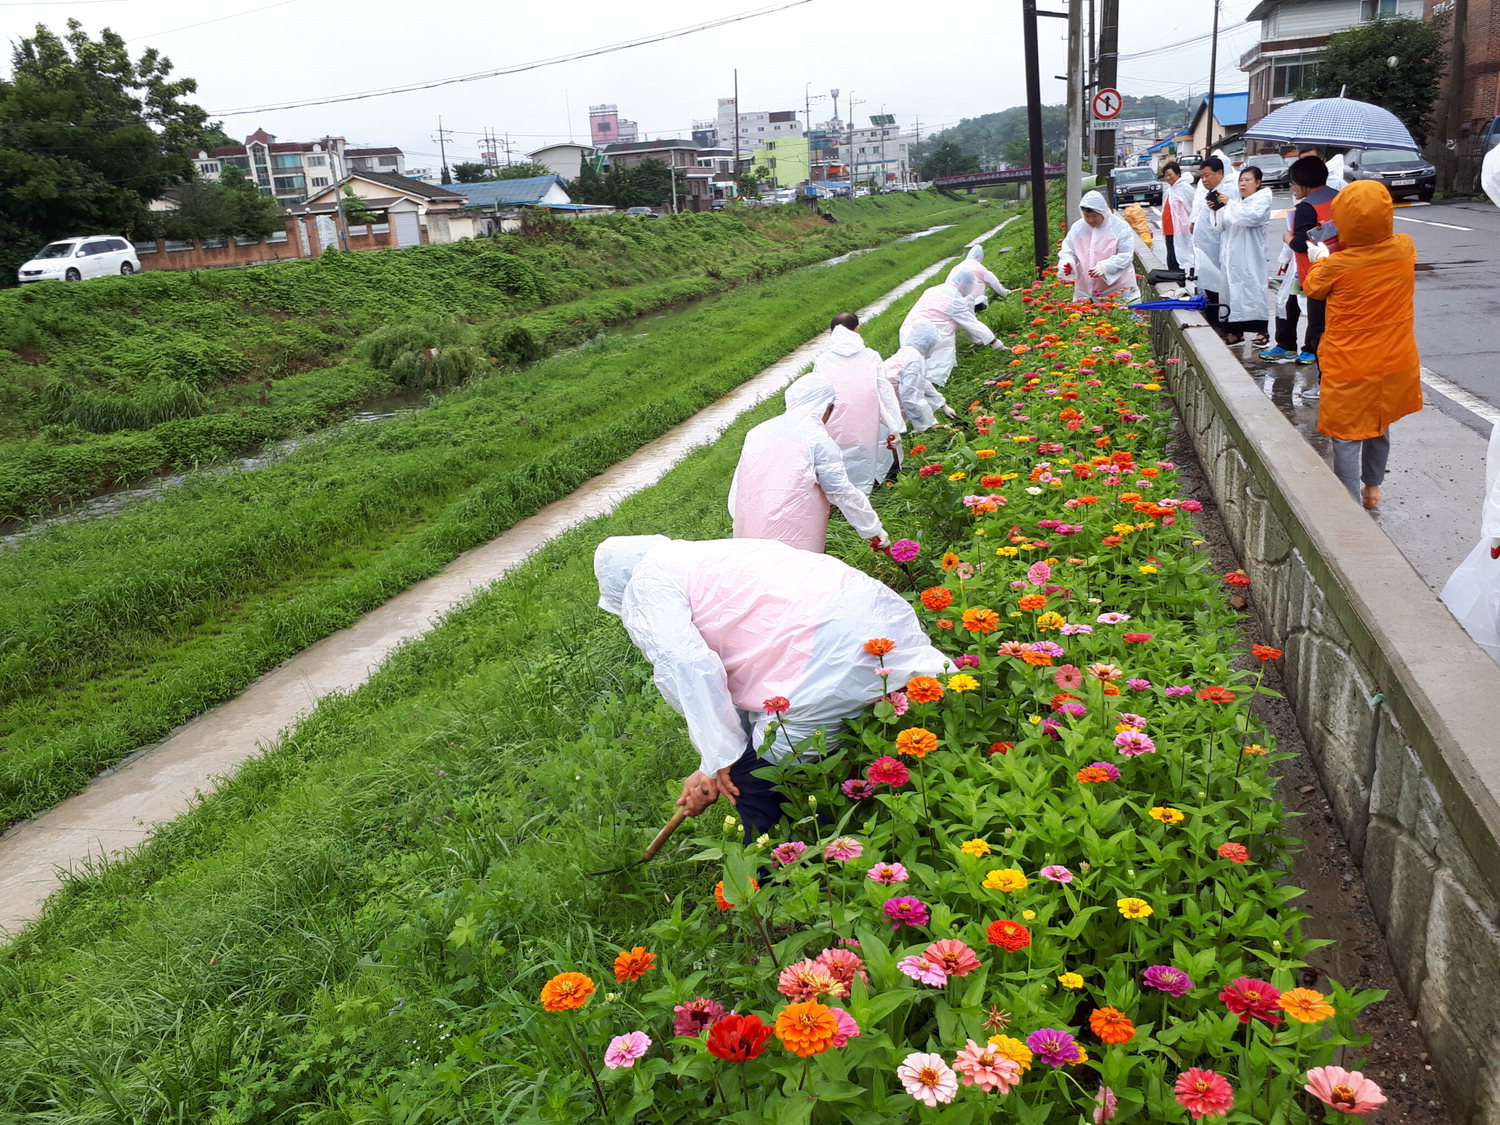 당진2동 주민자치위원회가 당진천변에 꽃을 식재하고 있다. / 당진시 당진2동